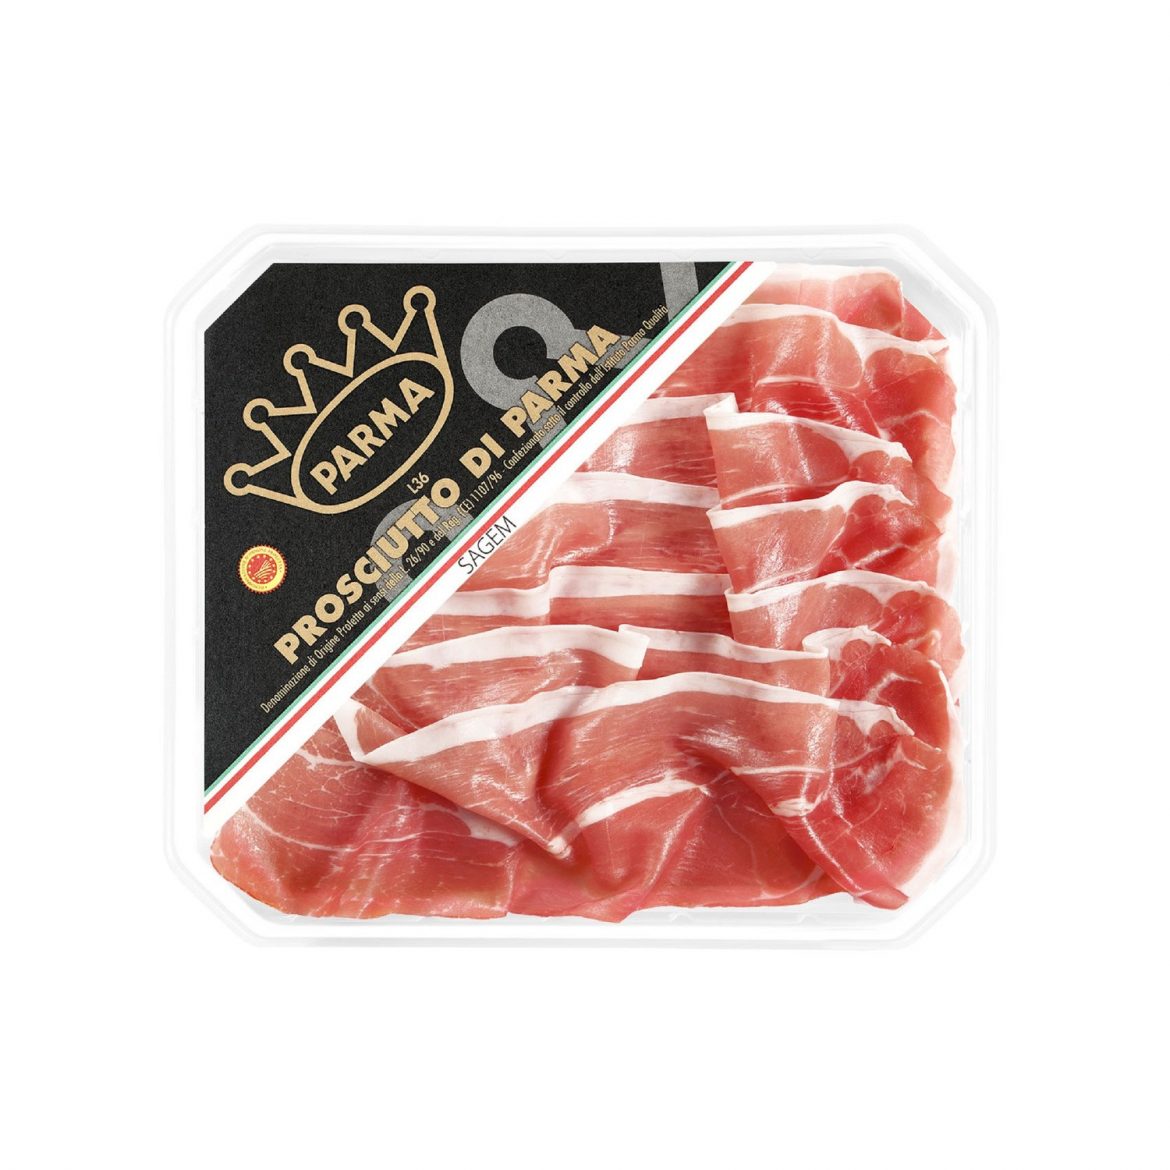 Prosciutto di Parma packaging